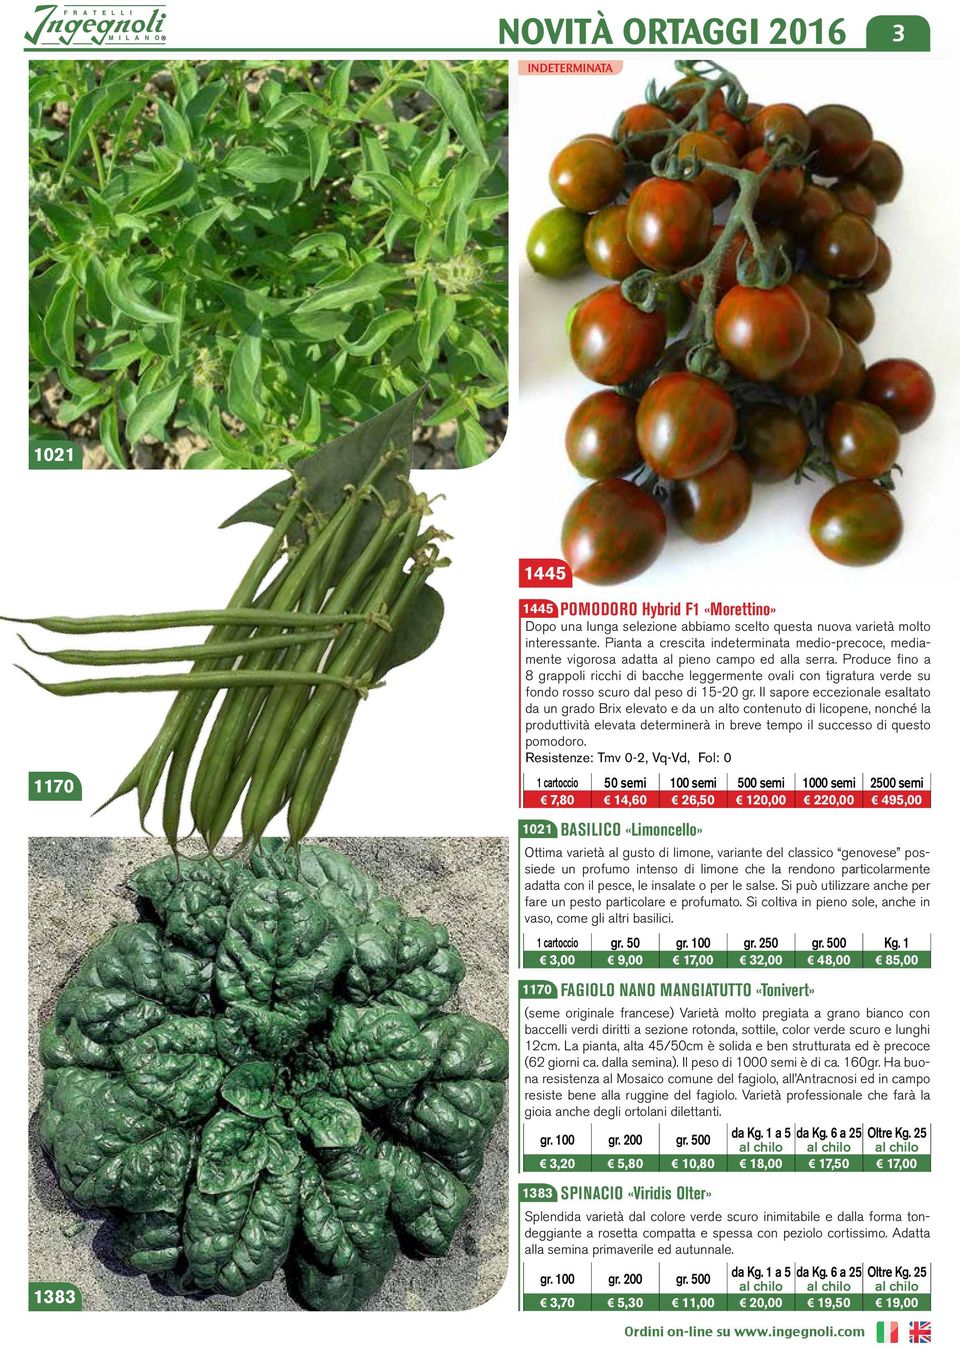 Produce fino a 8 grappoli ricchi di bacche leggermente ovali con tigratura verde su fondo rosso scuro dal peso di 15-20 gr.